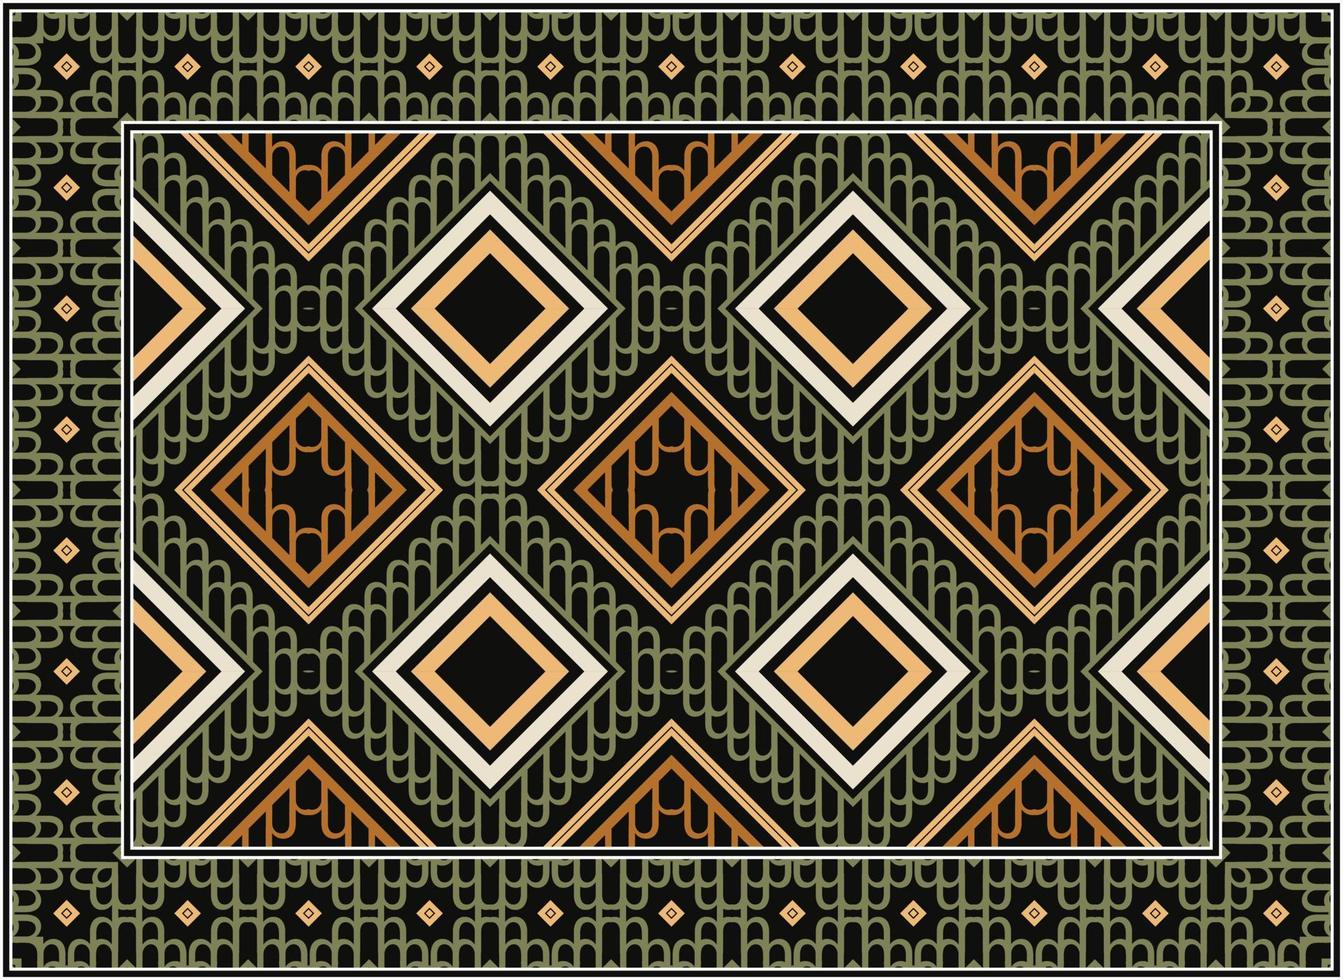 persiano tappeto moderno vivente camera, africano motivo scandinavo persiano tappeto moderno africano etnico azteco stile design per Stampa tessuto tappeti, asciugamani, fazzoletti, sciarpe tappeto, vettore